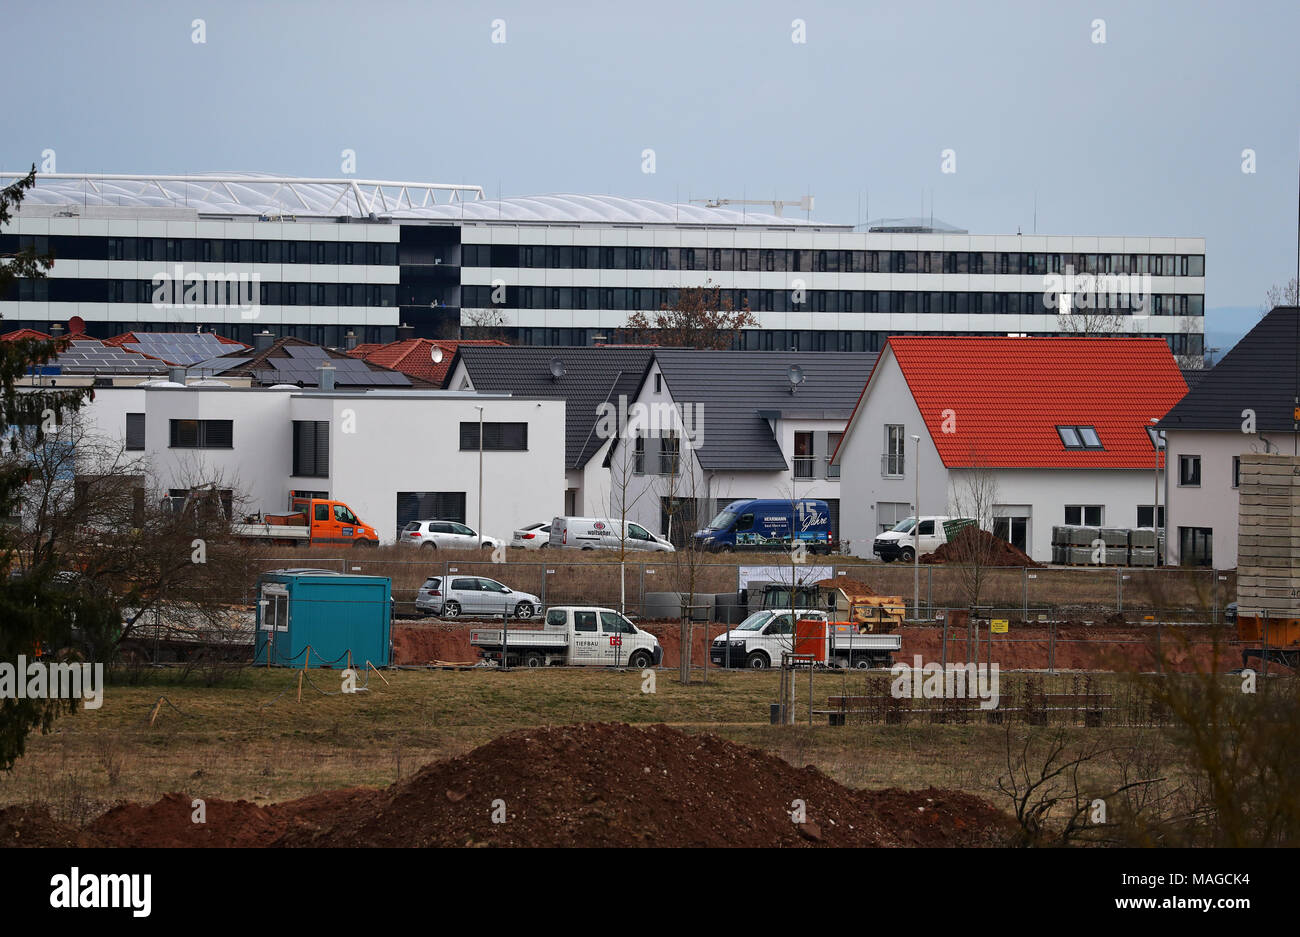 29 mars 2018, l'Allemagne, Herzogenaurach : Le nouveau bâtiment pour le siège  social de fabricant d'articles de sport Adidas est visible derrière un  développement de logement. Photo : Daniel Karmann/dpa Photo Stock -